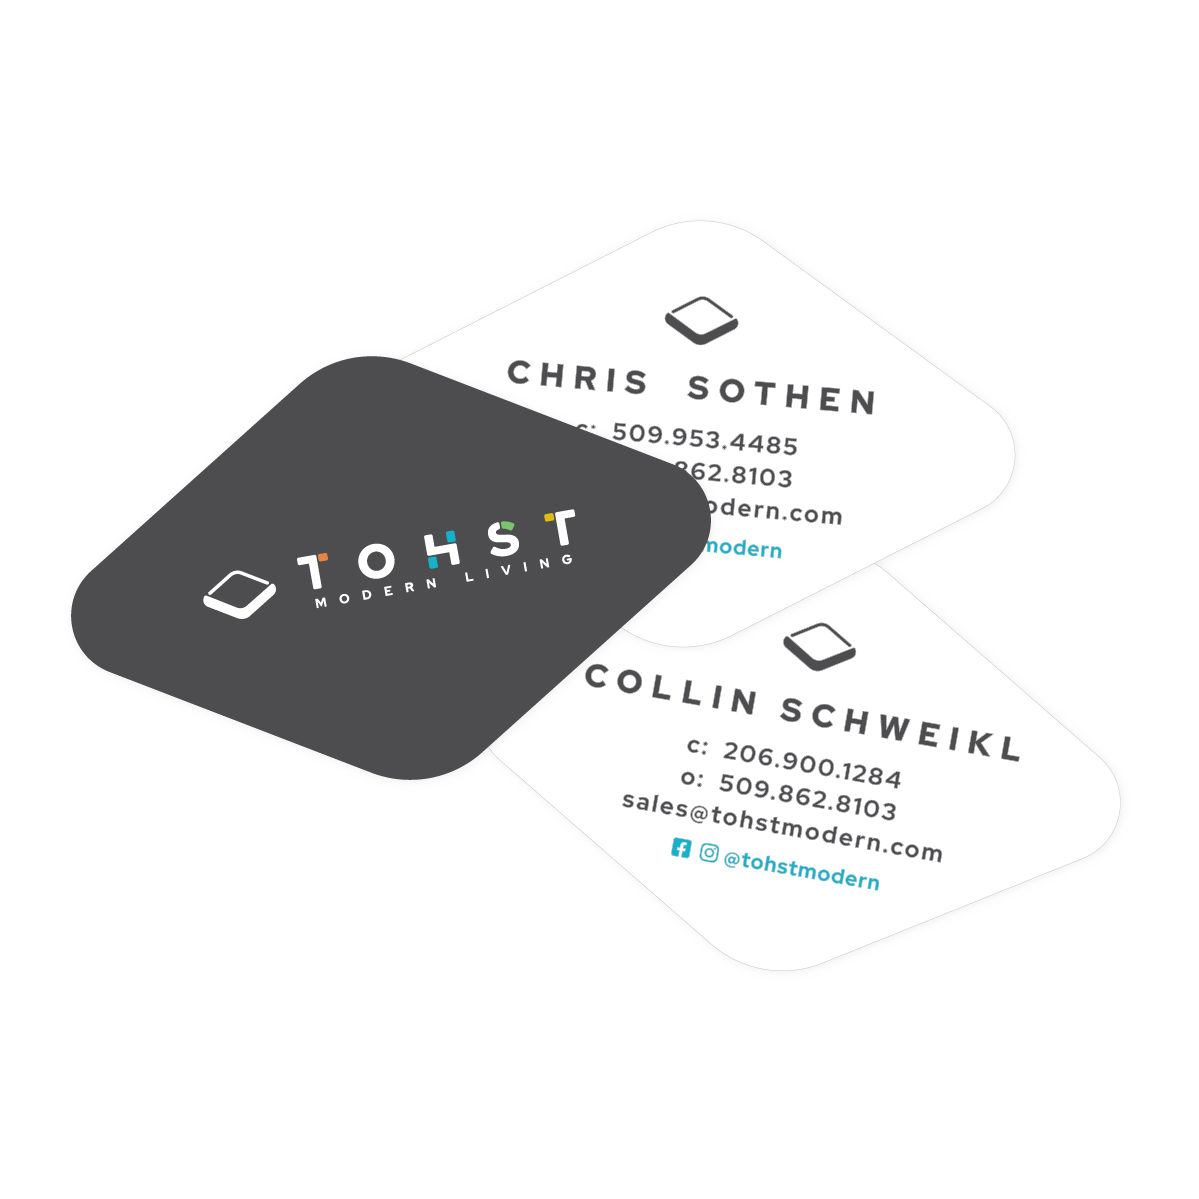 Tohst modern living custom business card branding design